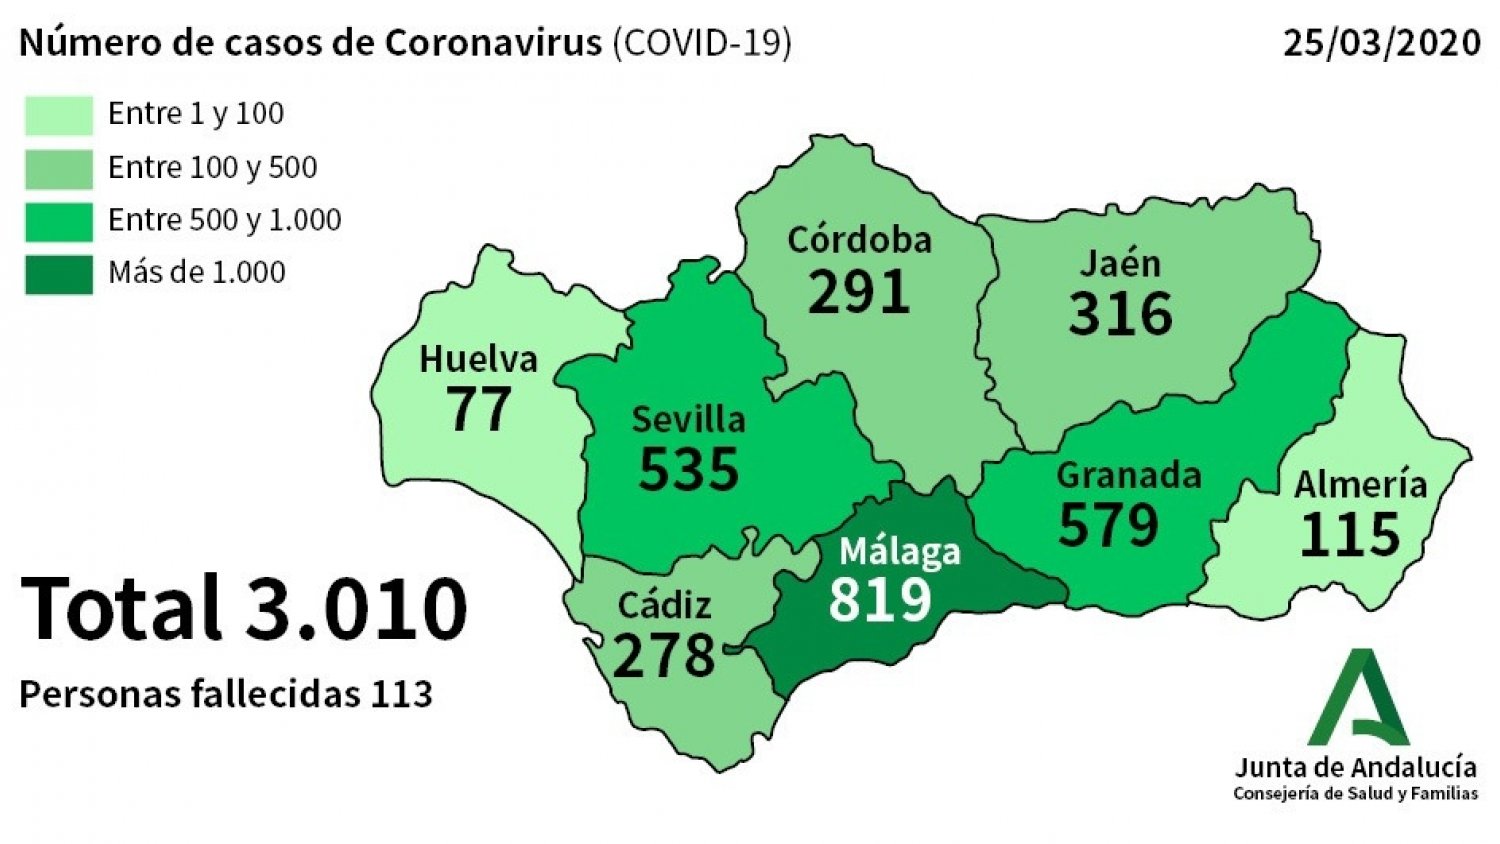 Málaga sufre un repunte de casos por coronavirus con 254 nuevos afectados y contabiliza 40 fallecidos